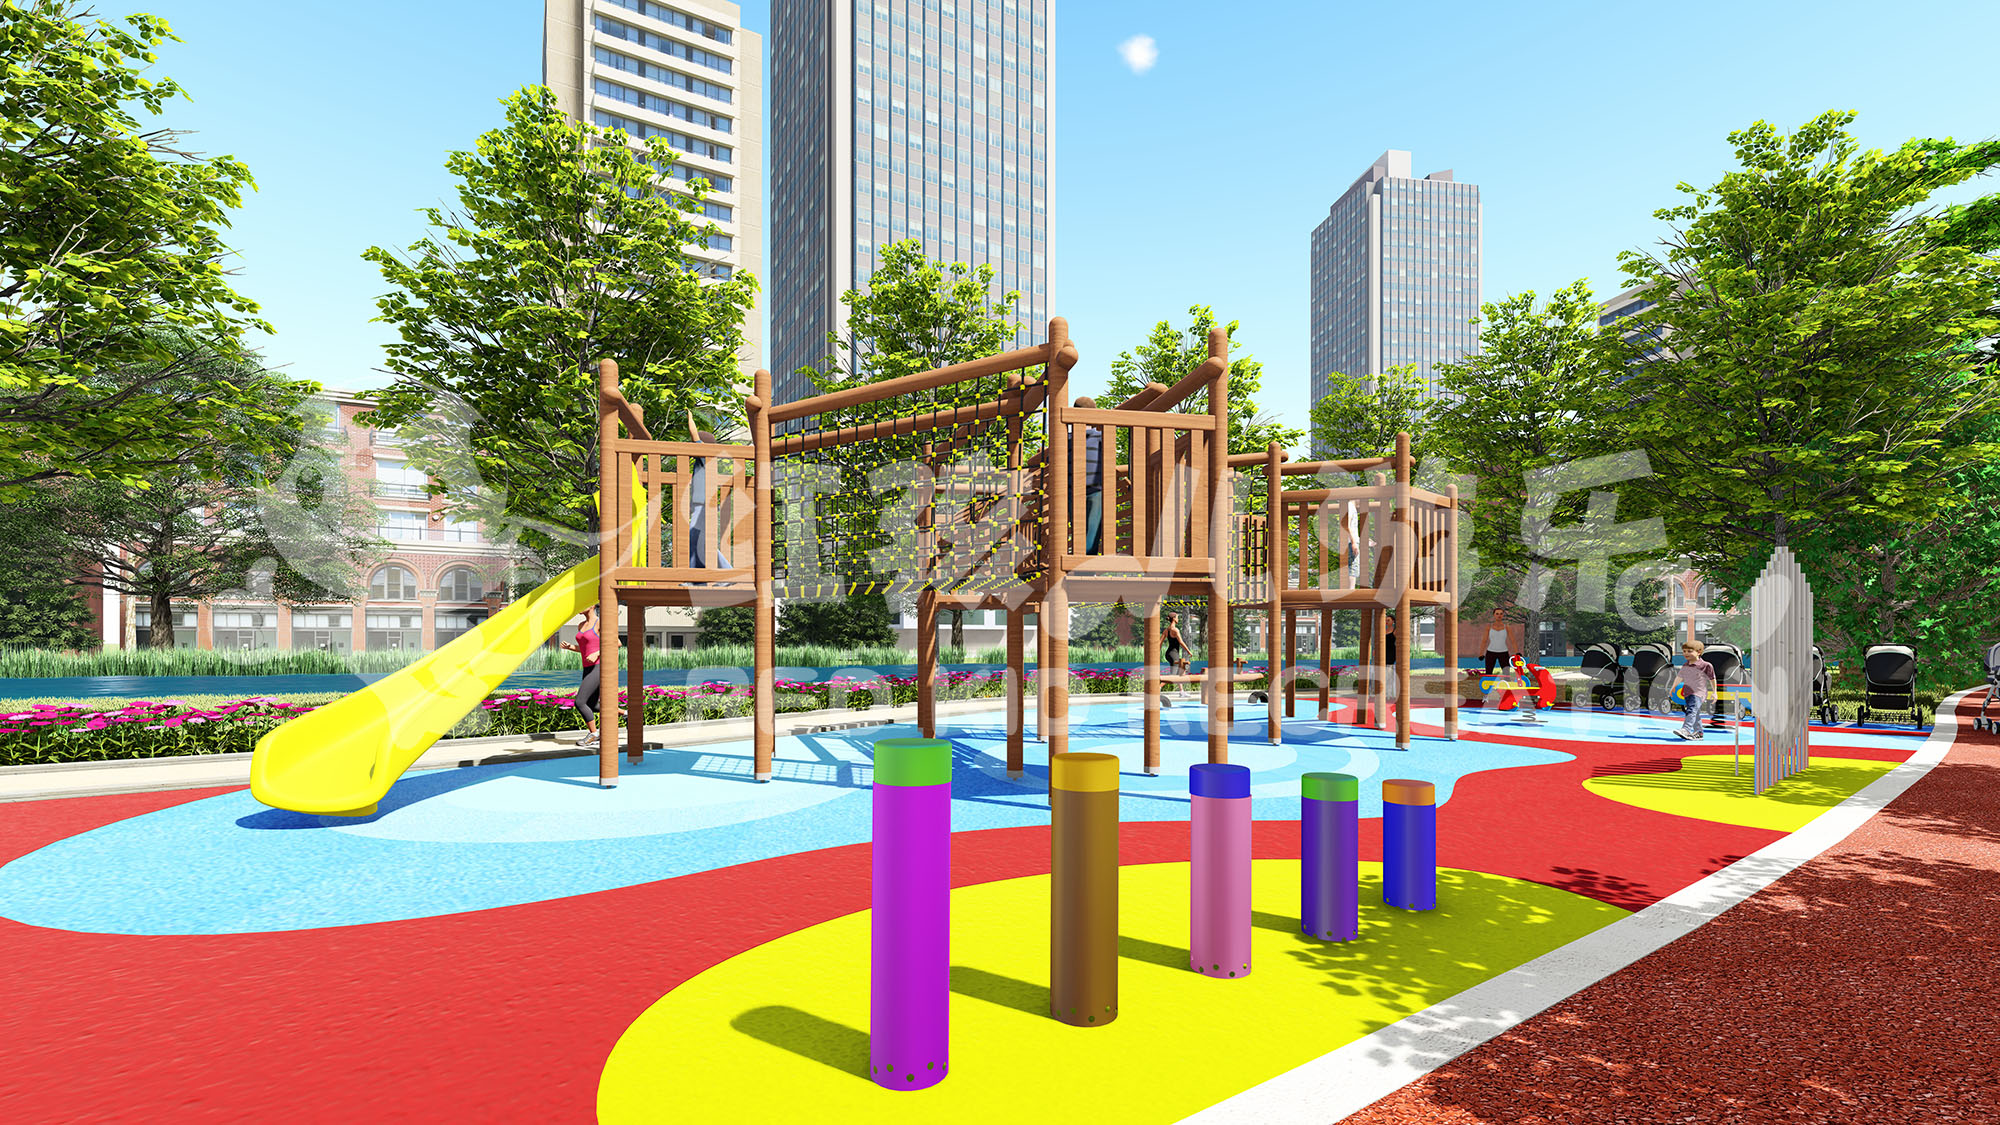 佑汉街市公园2儿童游乐场完成优化重开 – 澳门特别行政区政府入口网站